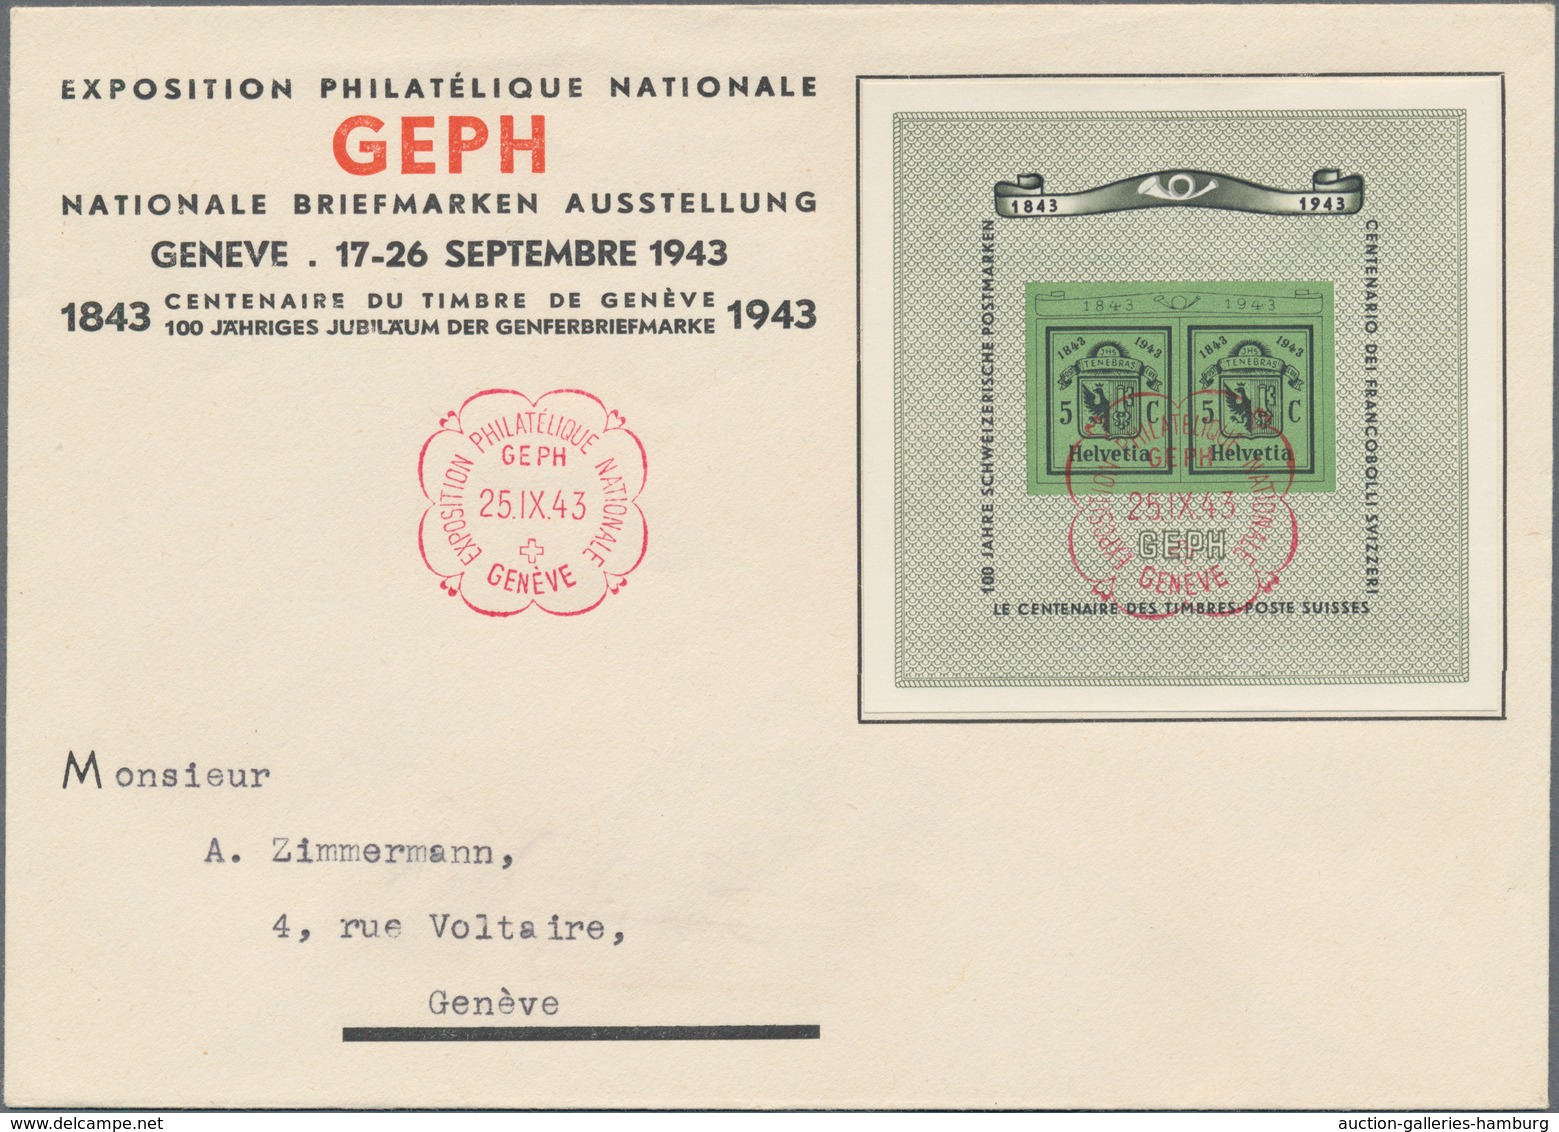 Schweiz: 1938/1995, Briefmarken-/Landesausstellungen, saubere Partie mit postfrischen Ausgaben und B